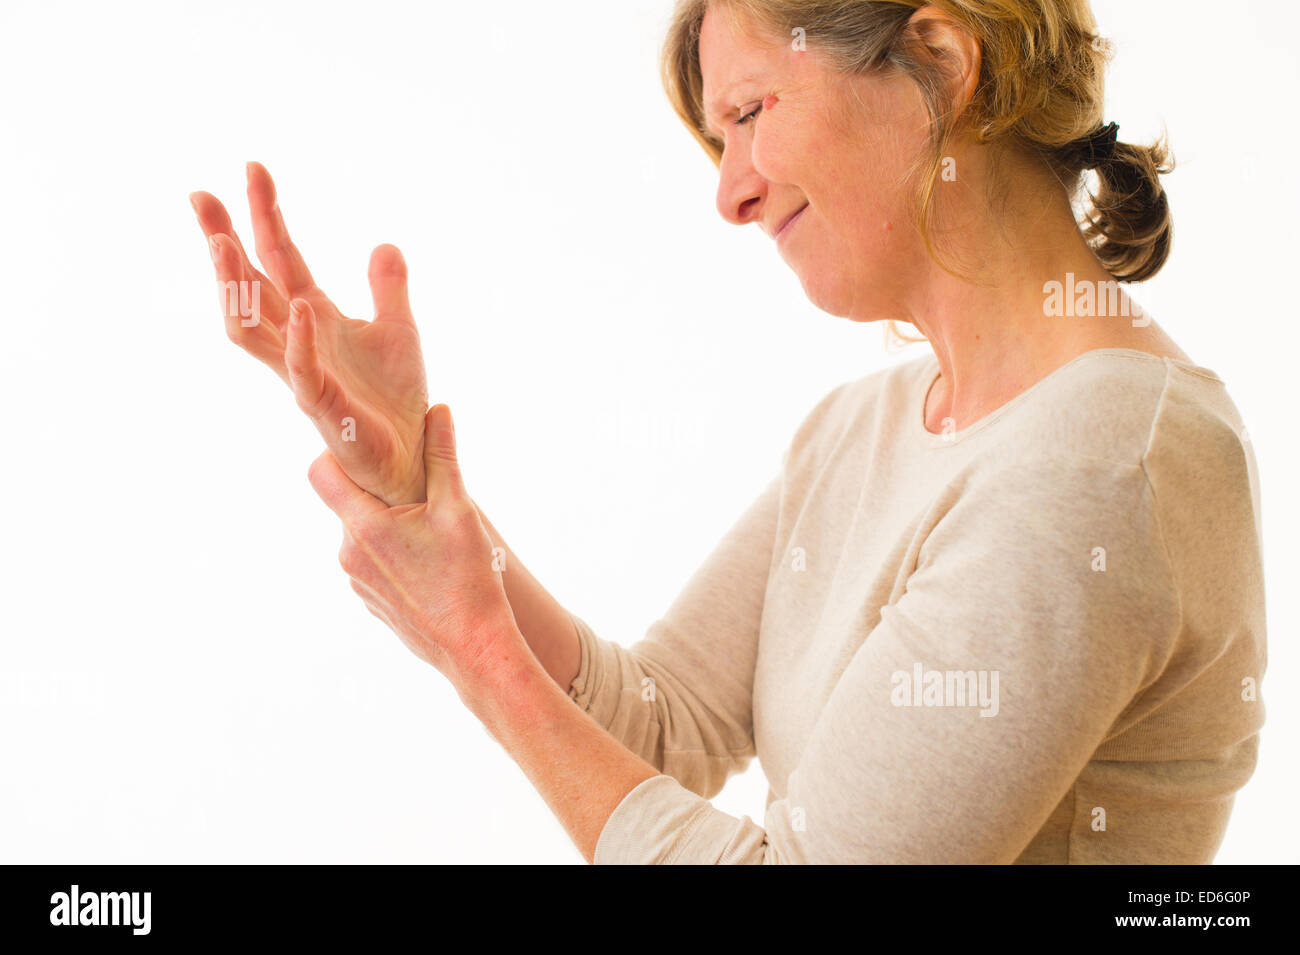 Un quarantenne donna caucasica con artrite dolorosa delle articolazioni della mano e del polso dita, strofinando il polso per il sollievo dal dolore, contro uno sfondo bianco. Regno Unito Foto Stock